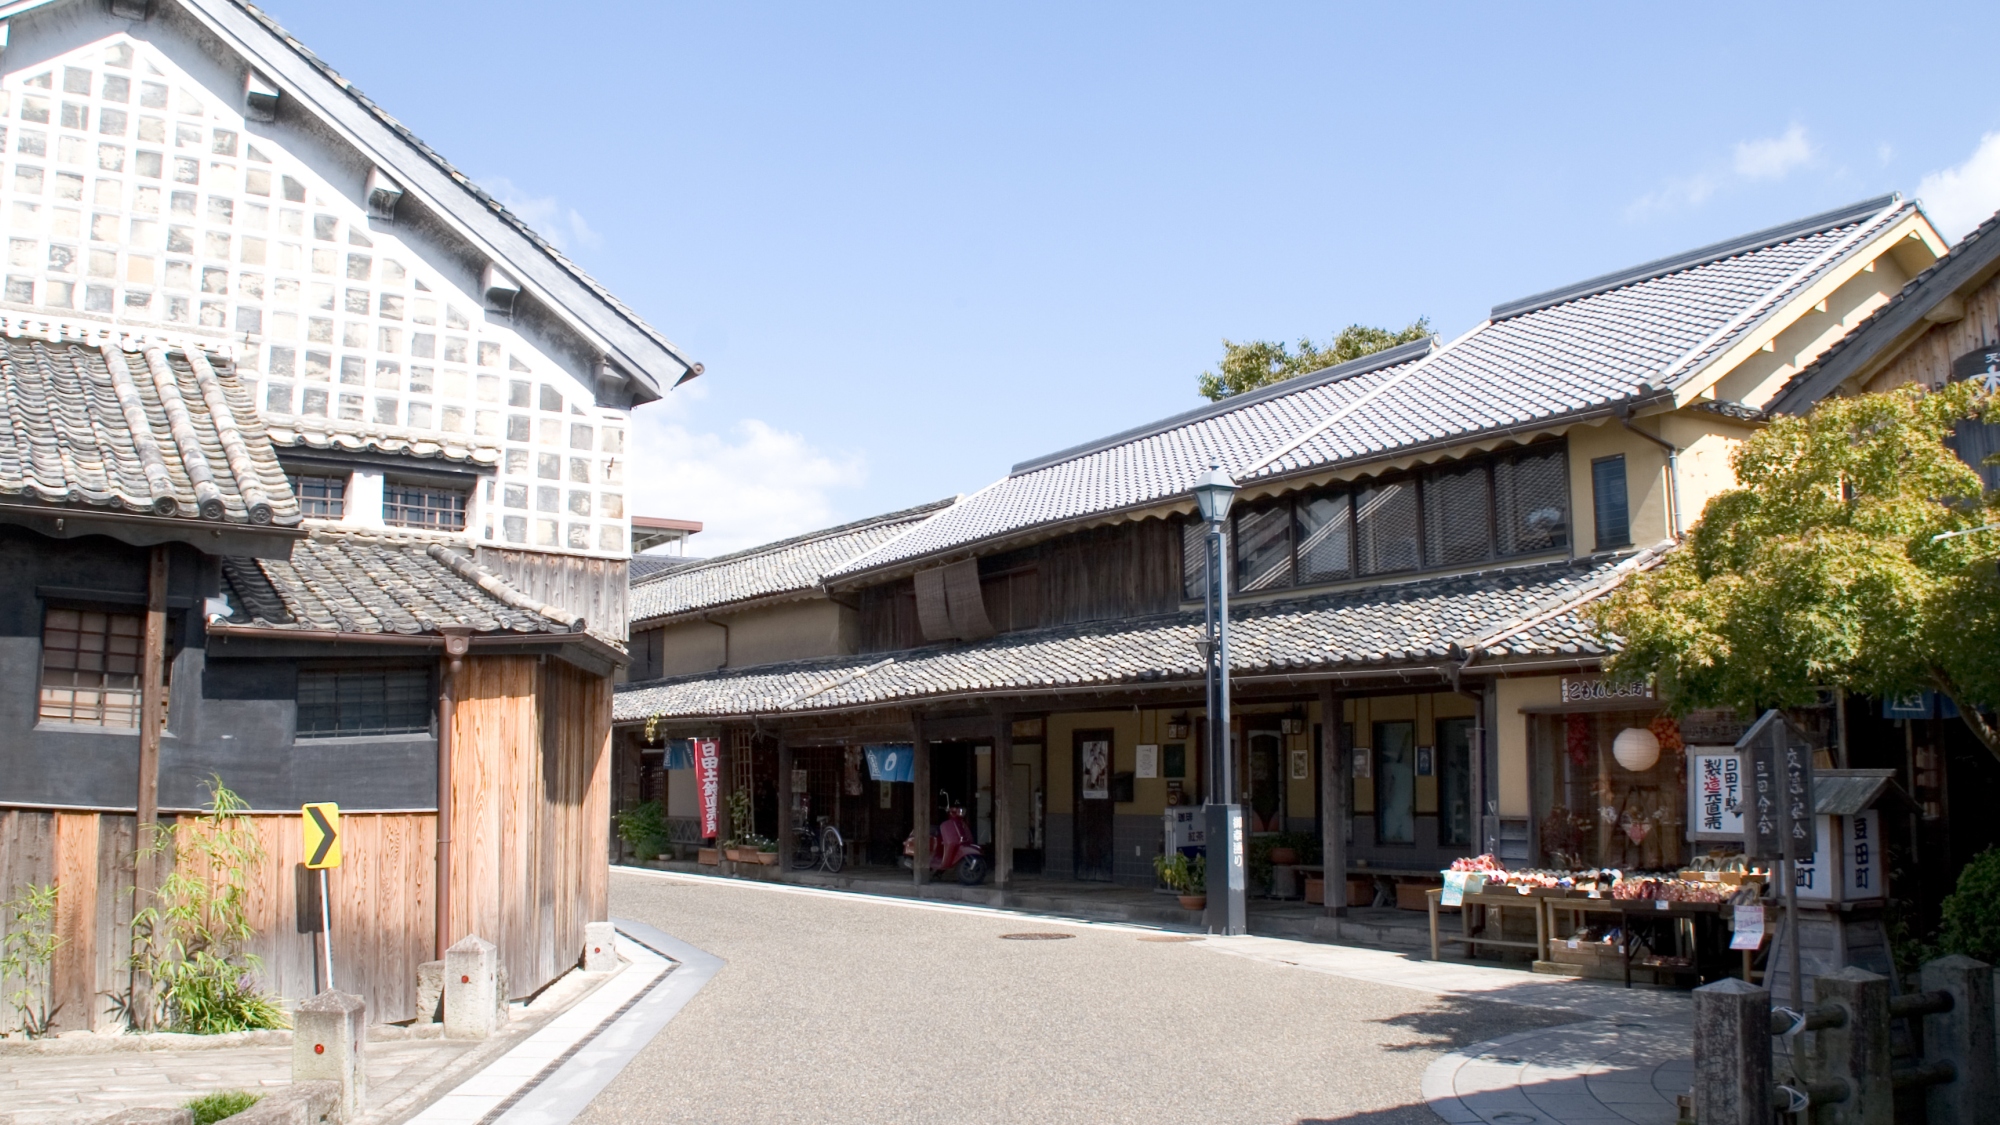 【豆田町】江戸時代、幕府の直轄領であり、町人文化が栄えた豆田町。